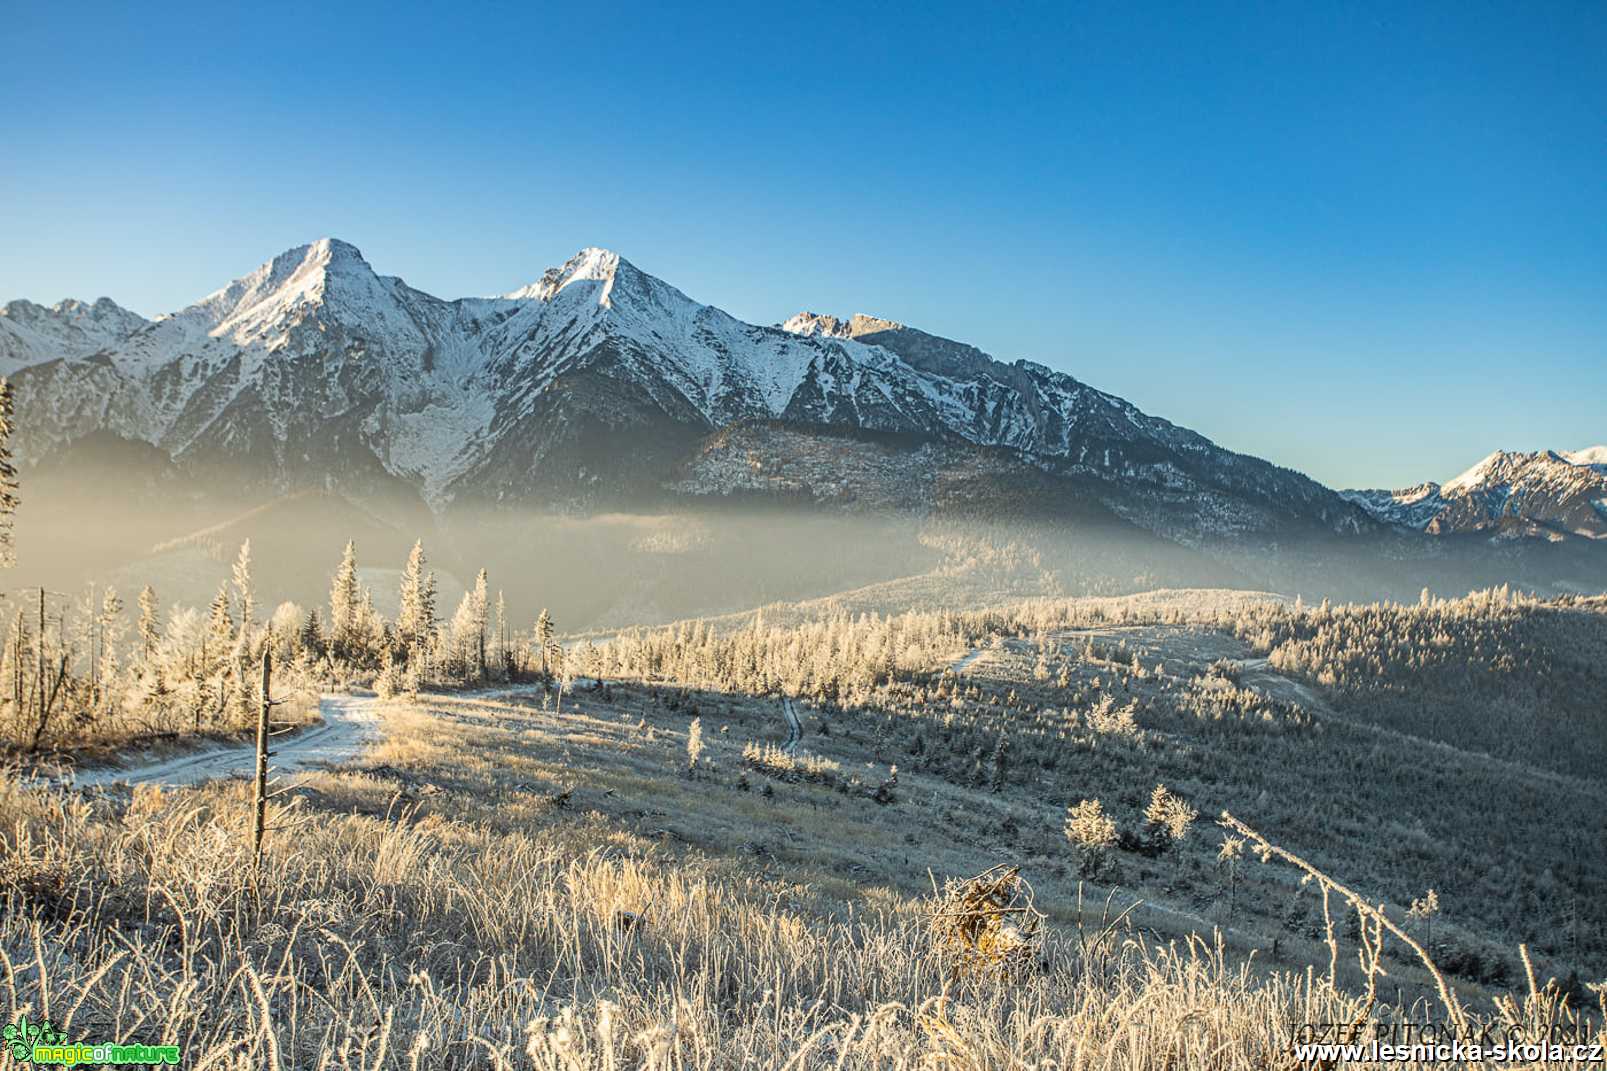 Zima 2021 dorazila - Foto Jozef Pitoňák 1121 (4)